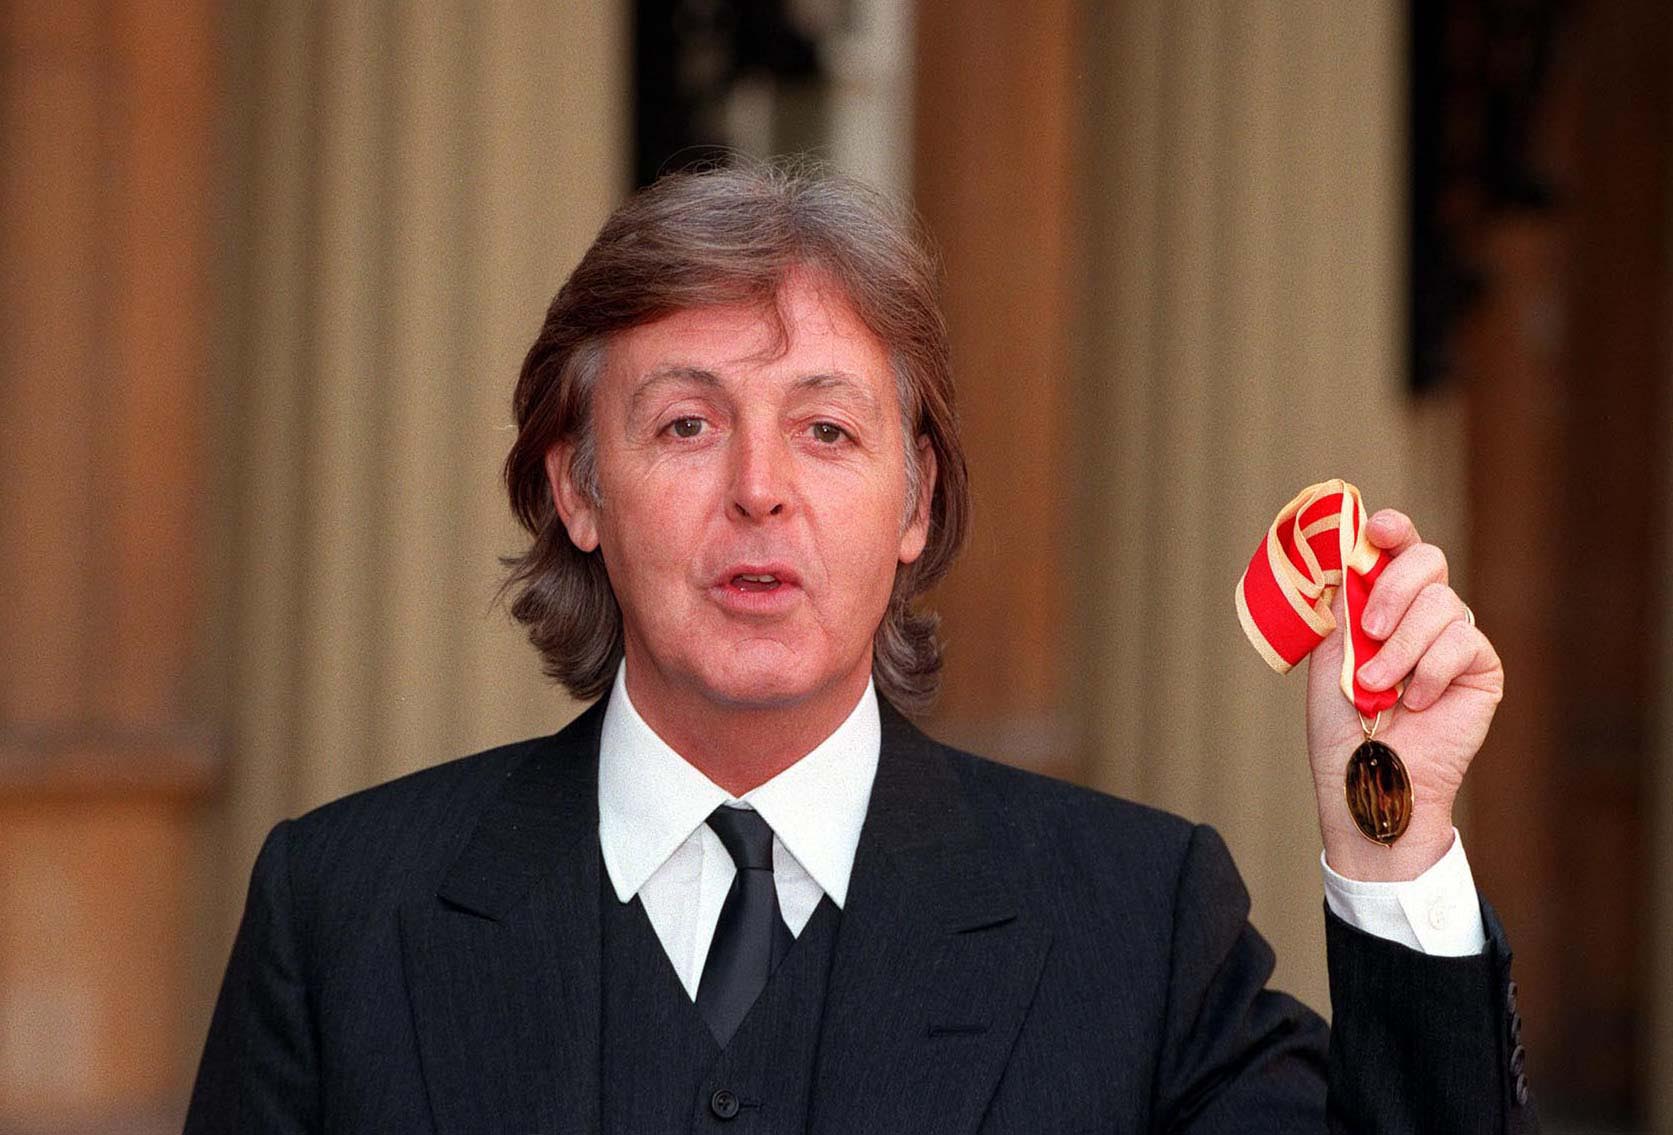 Escucha una versión inédita de "Calico Skies" de Paul McCartney